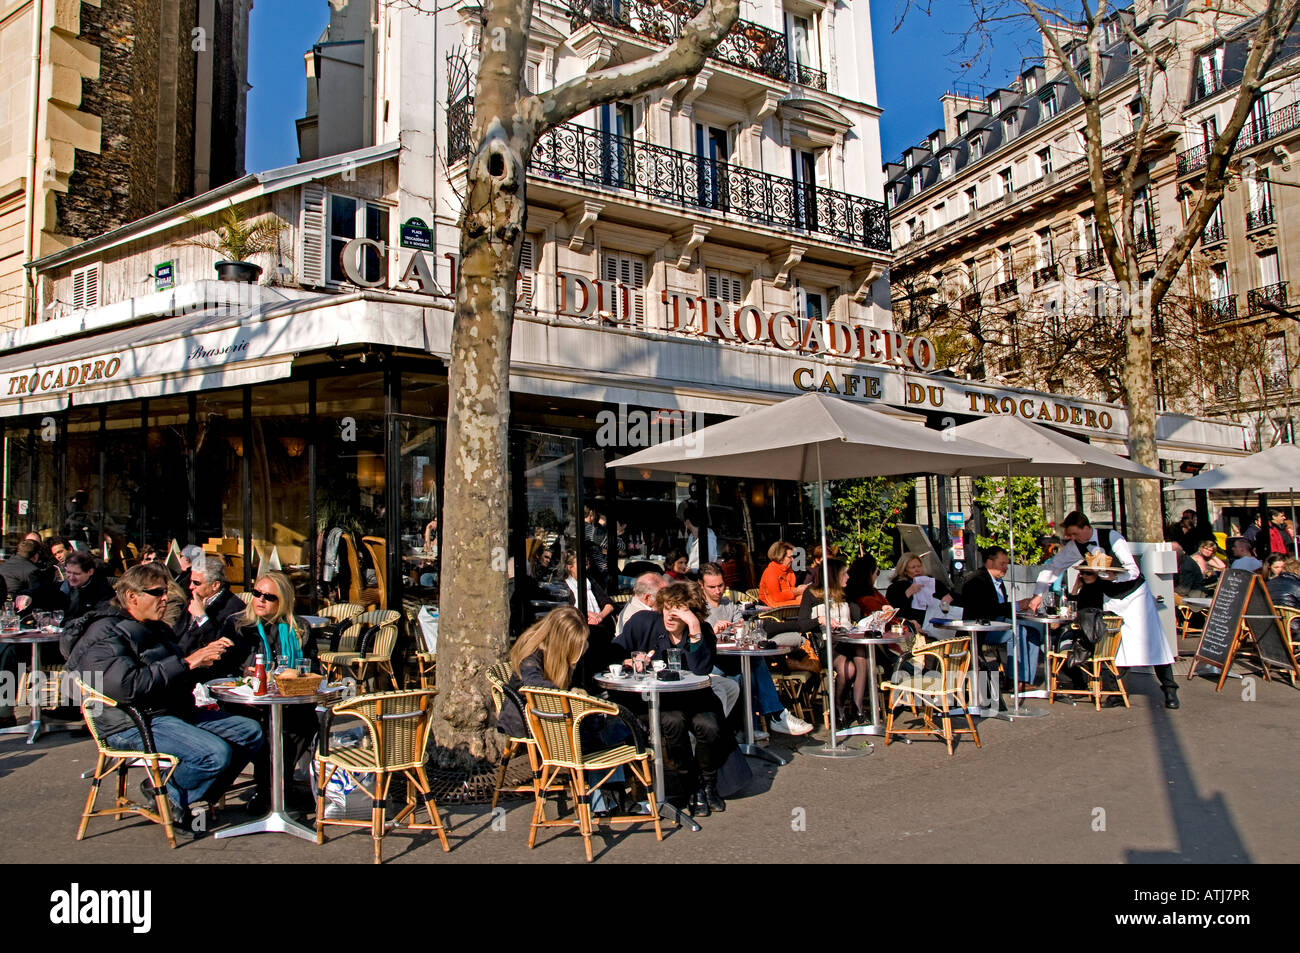 Cafe du Trocadero Paris bar terrace pavement cafe Stock Photo